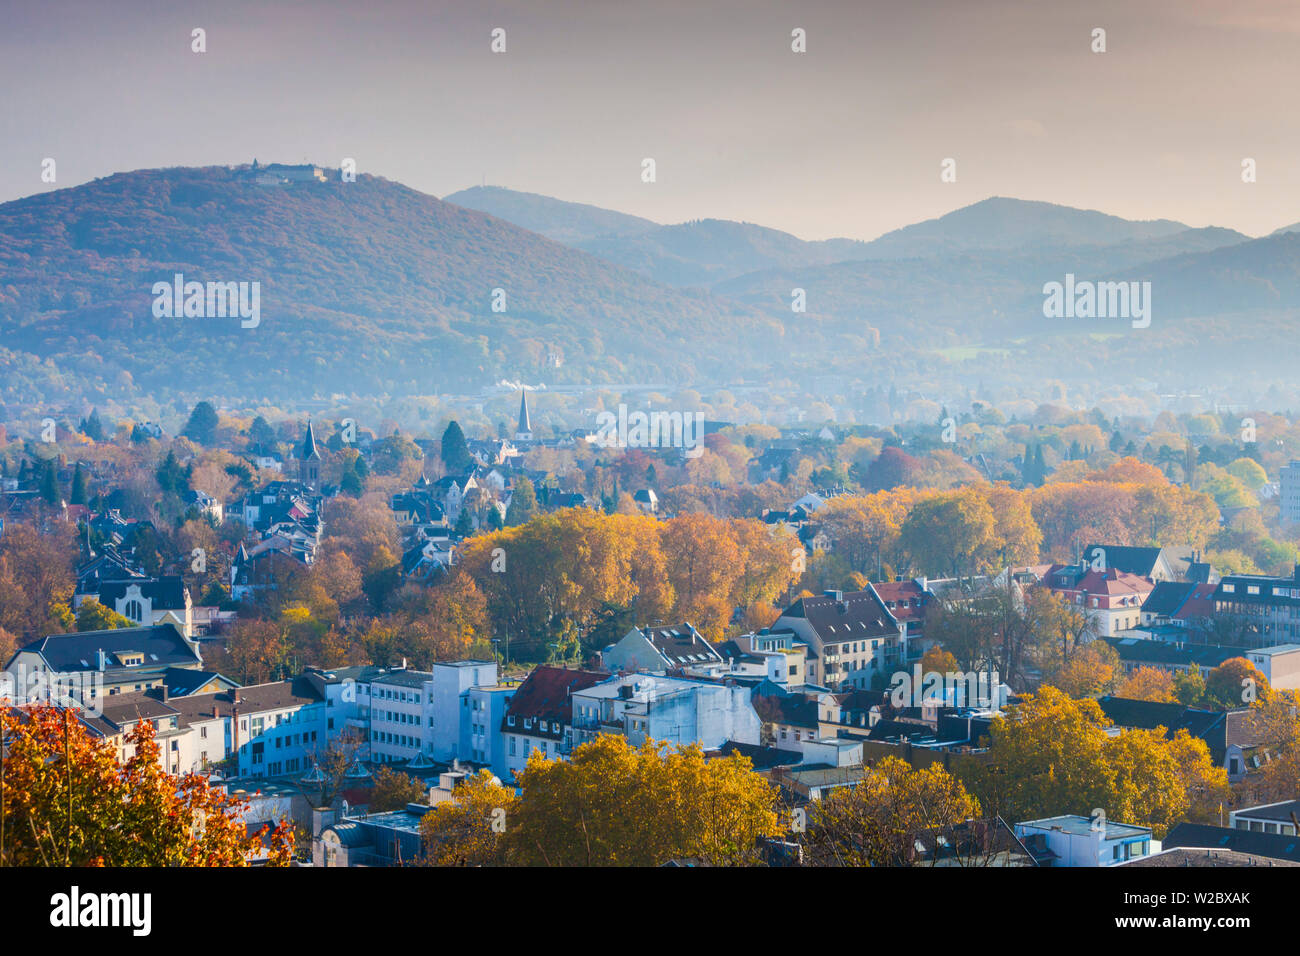 Alemania, Nordrhein-Westfalen, Bad Godesberg, niveles elevados de la ciudad vista desde la montaña de Bad Godesberg, otoño Foto de stock